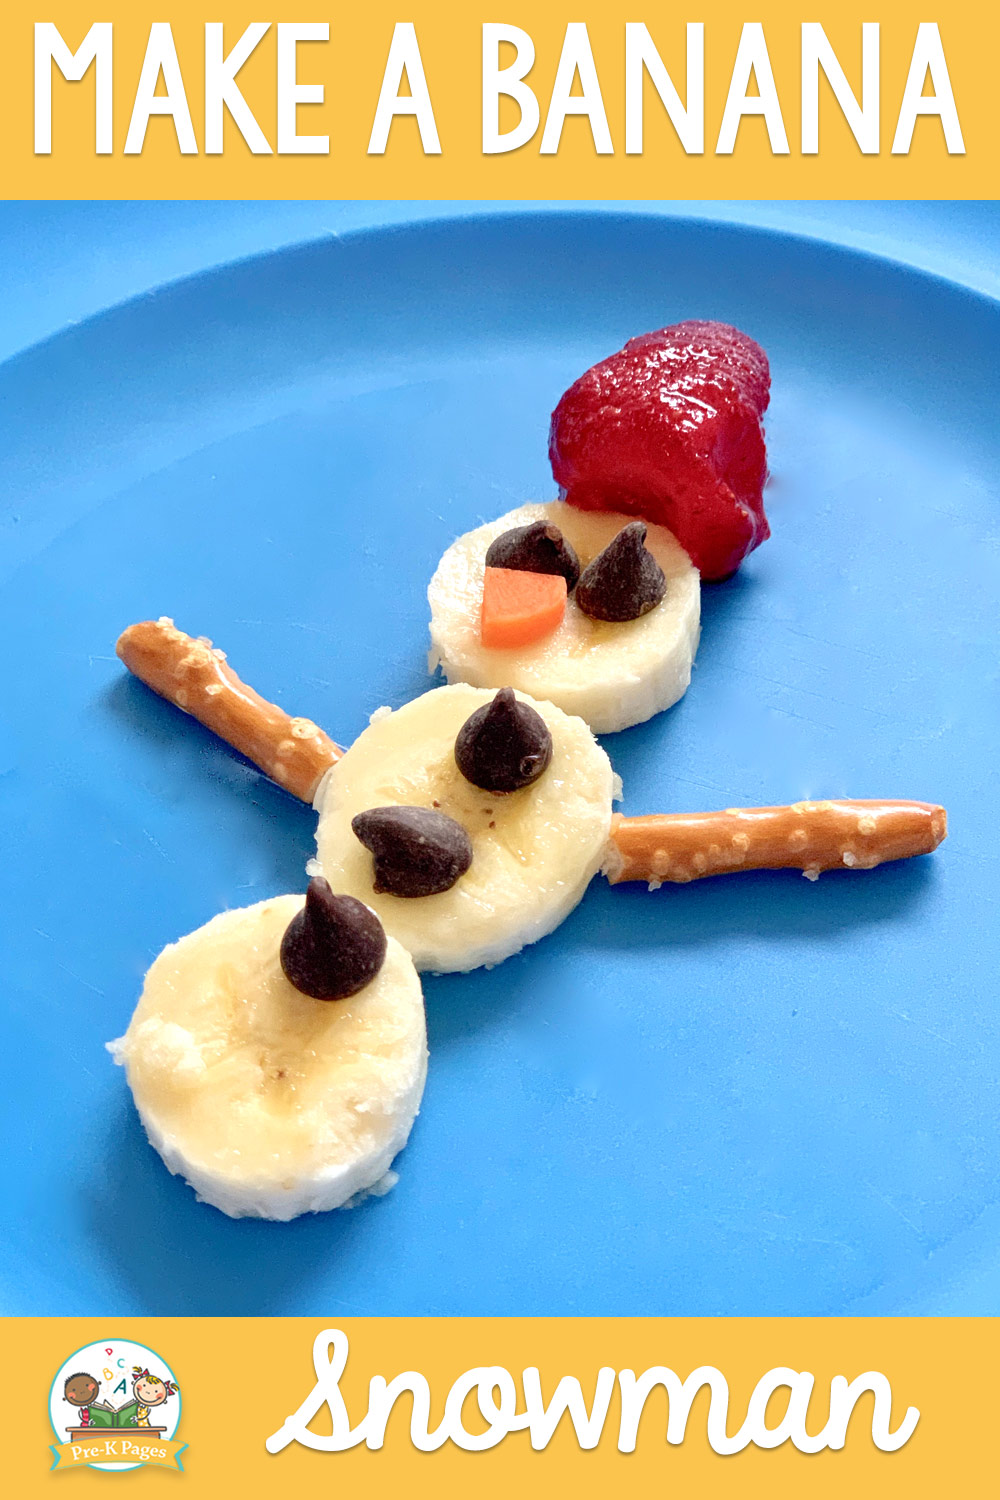 banana snowman classroom recipe